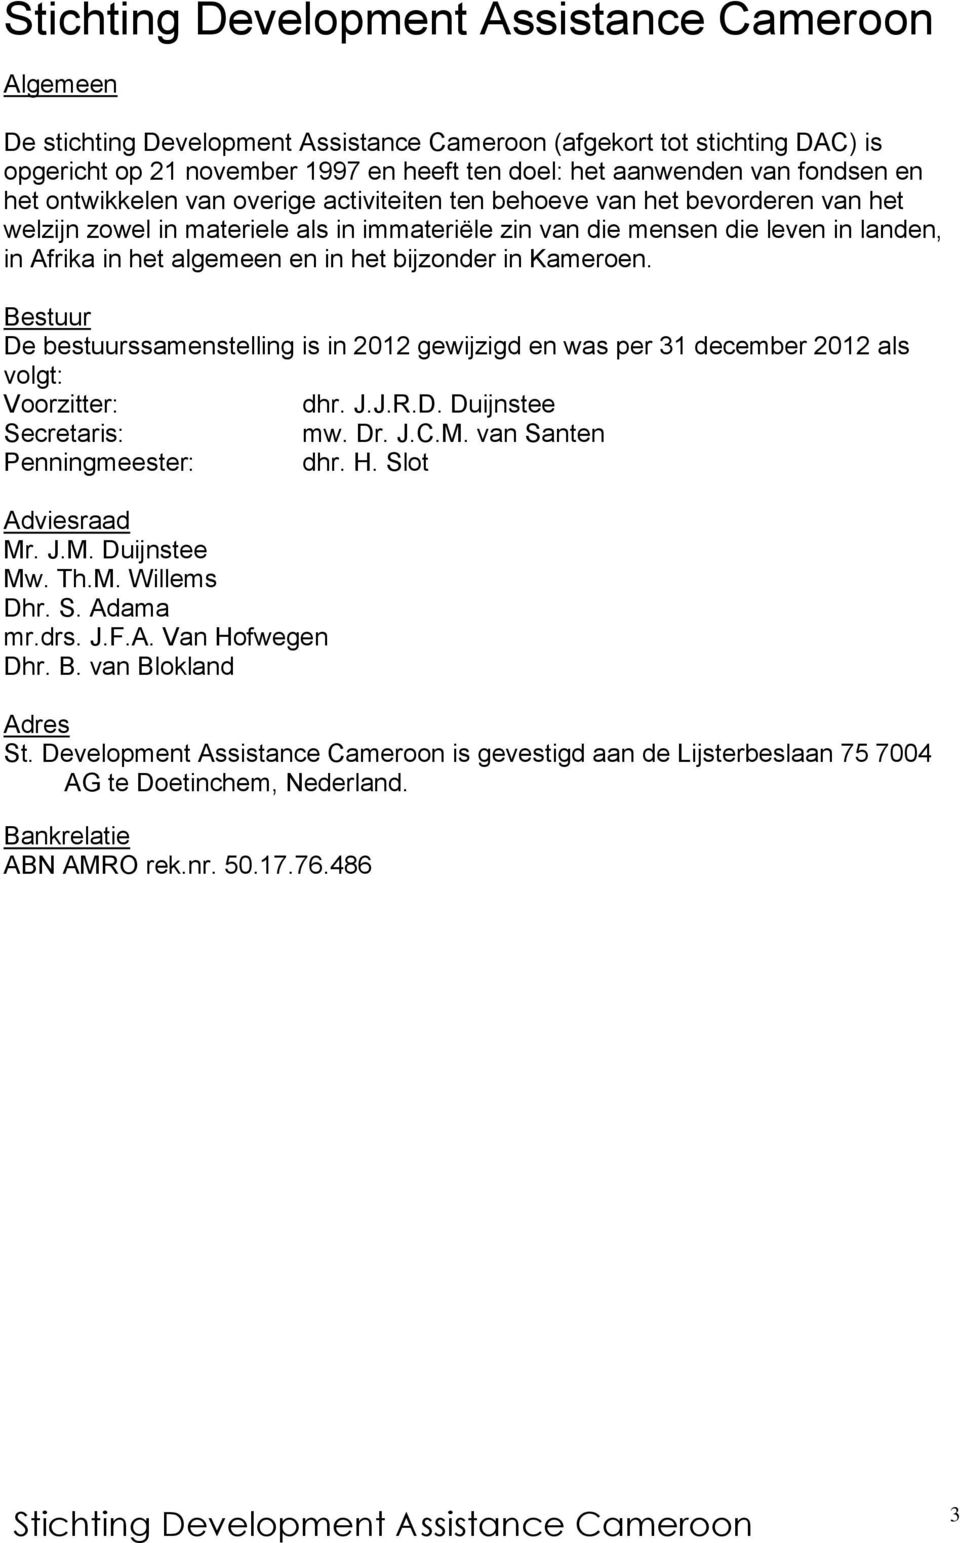 Bestuur De bestuurssamenstelling is in 2012 gewijzigd en was per 31 december 2012 als volgt: Voorzitter: dhr. J.J.R.D. Duijnstee Secretaris: mw. Dr. J.C.M. van Santen Penningmeester: dhr. H.